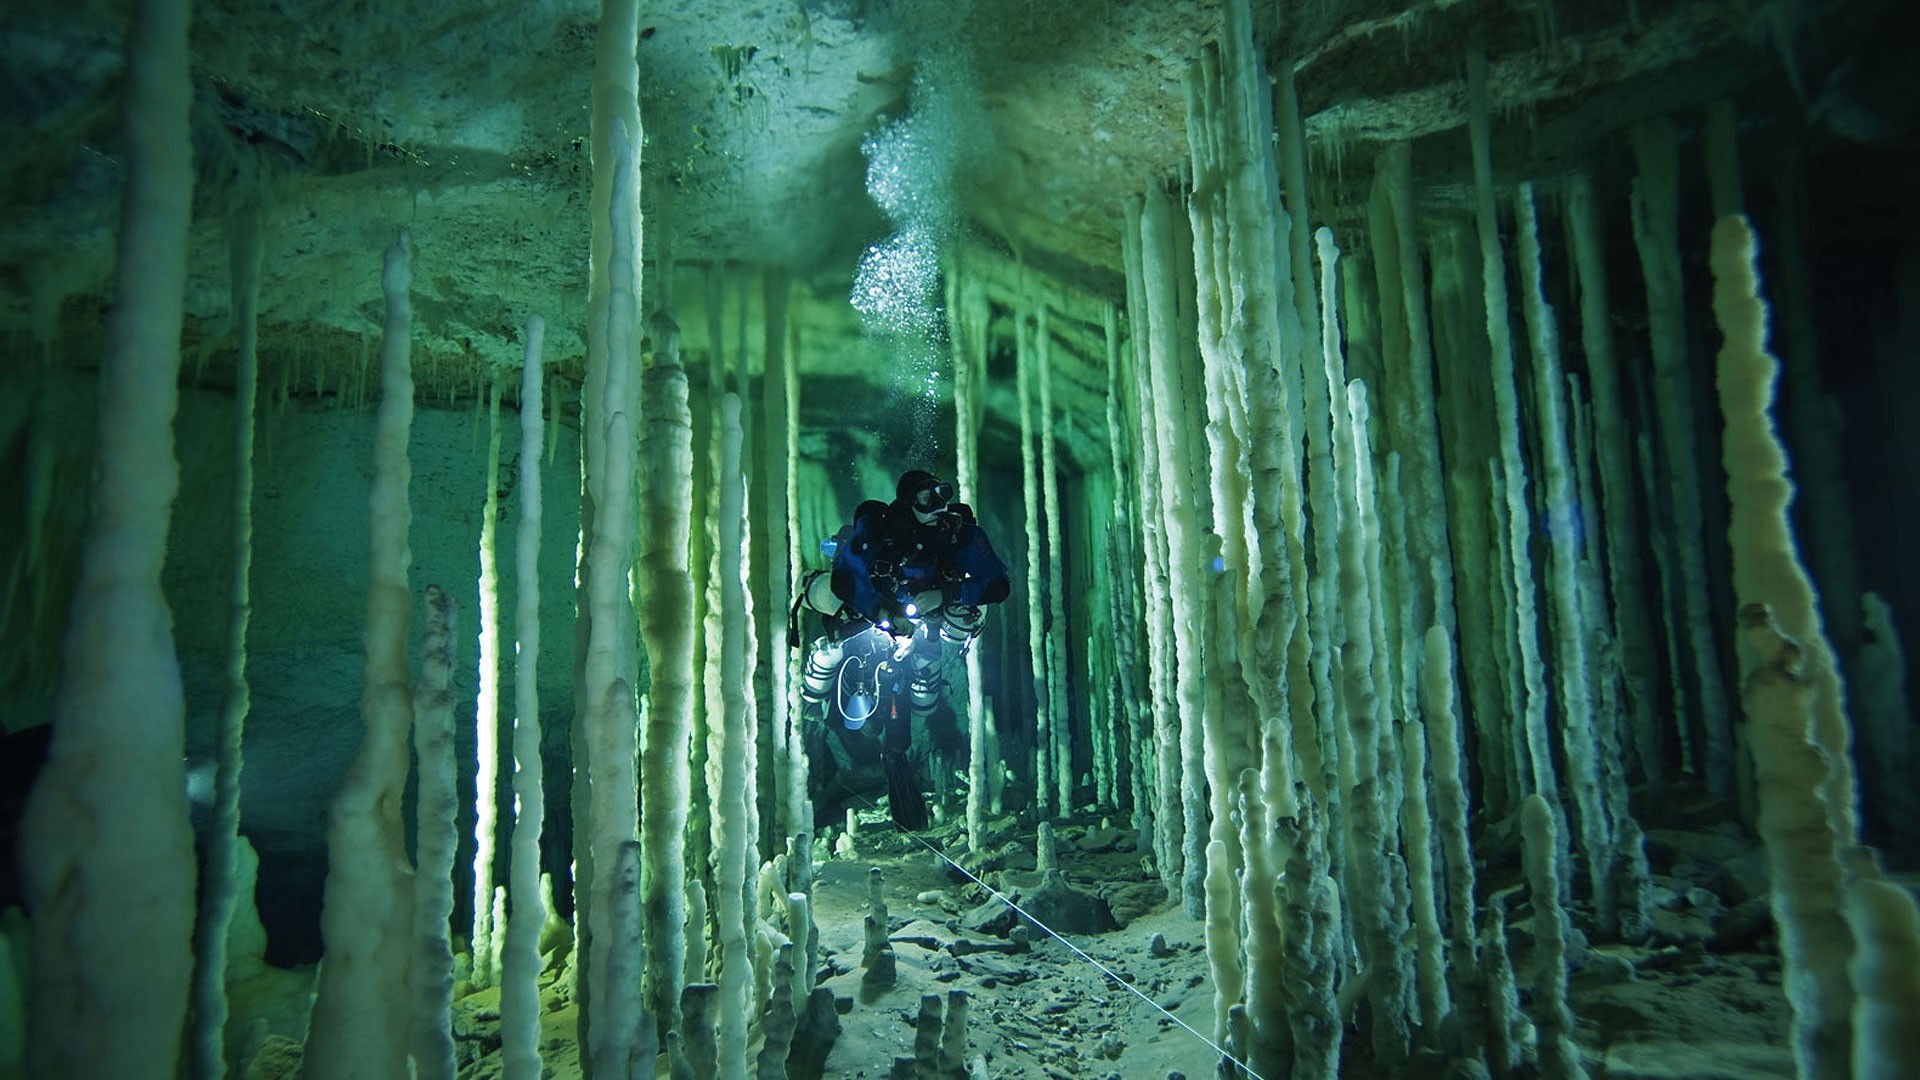 Underwater caves - Phone wallpapers